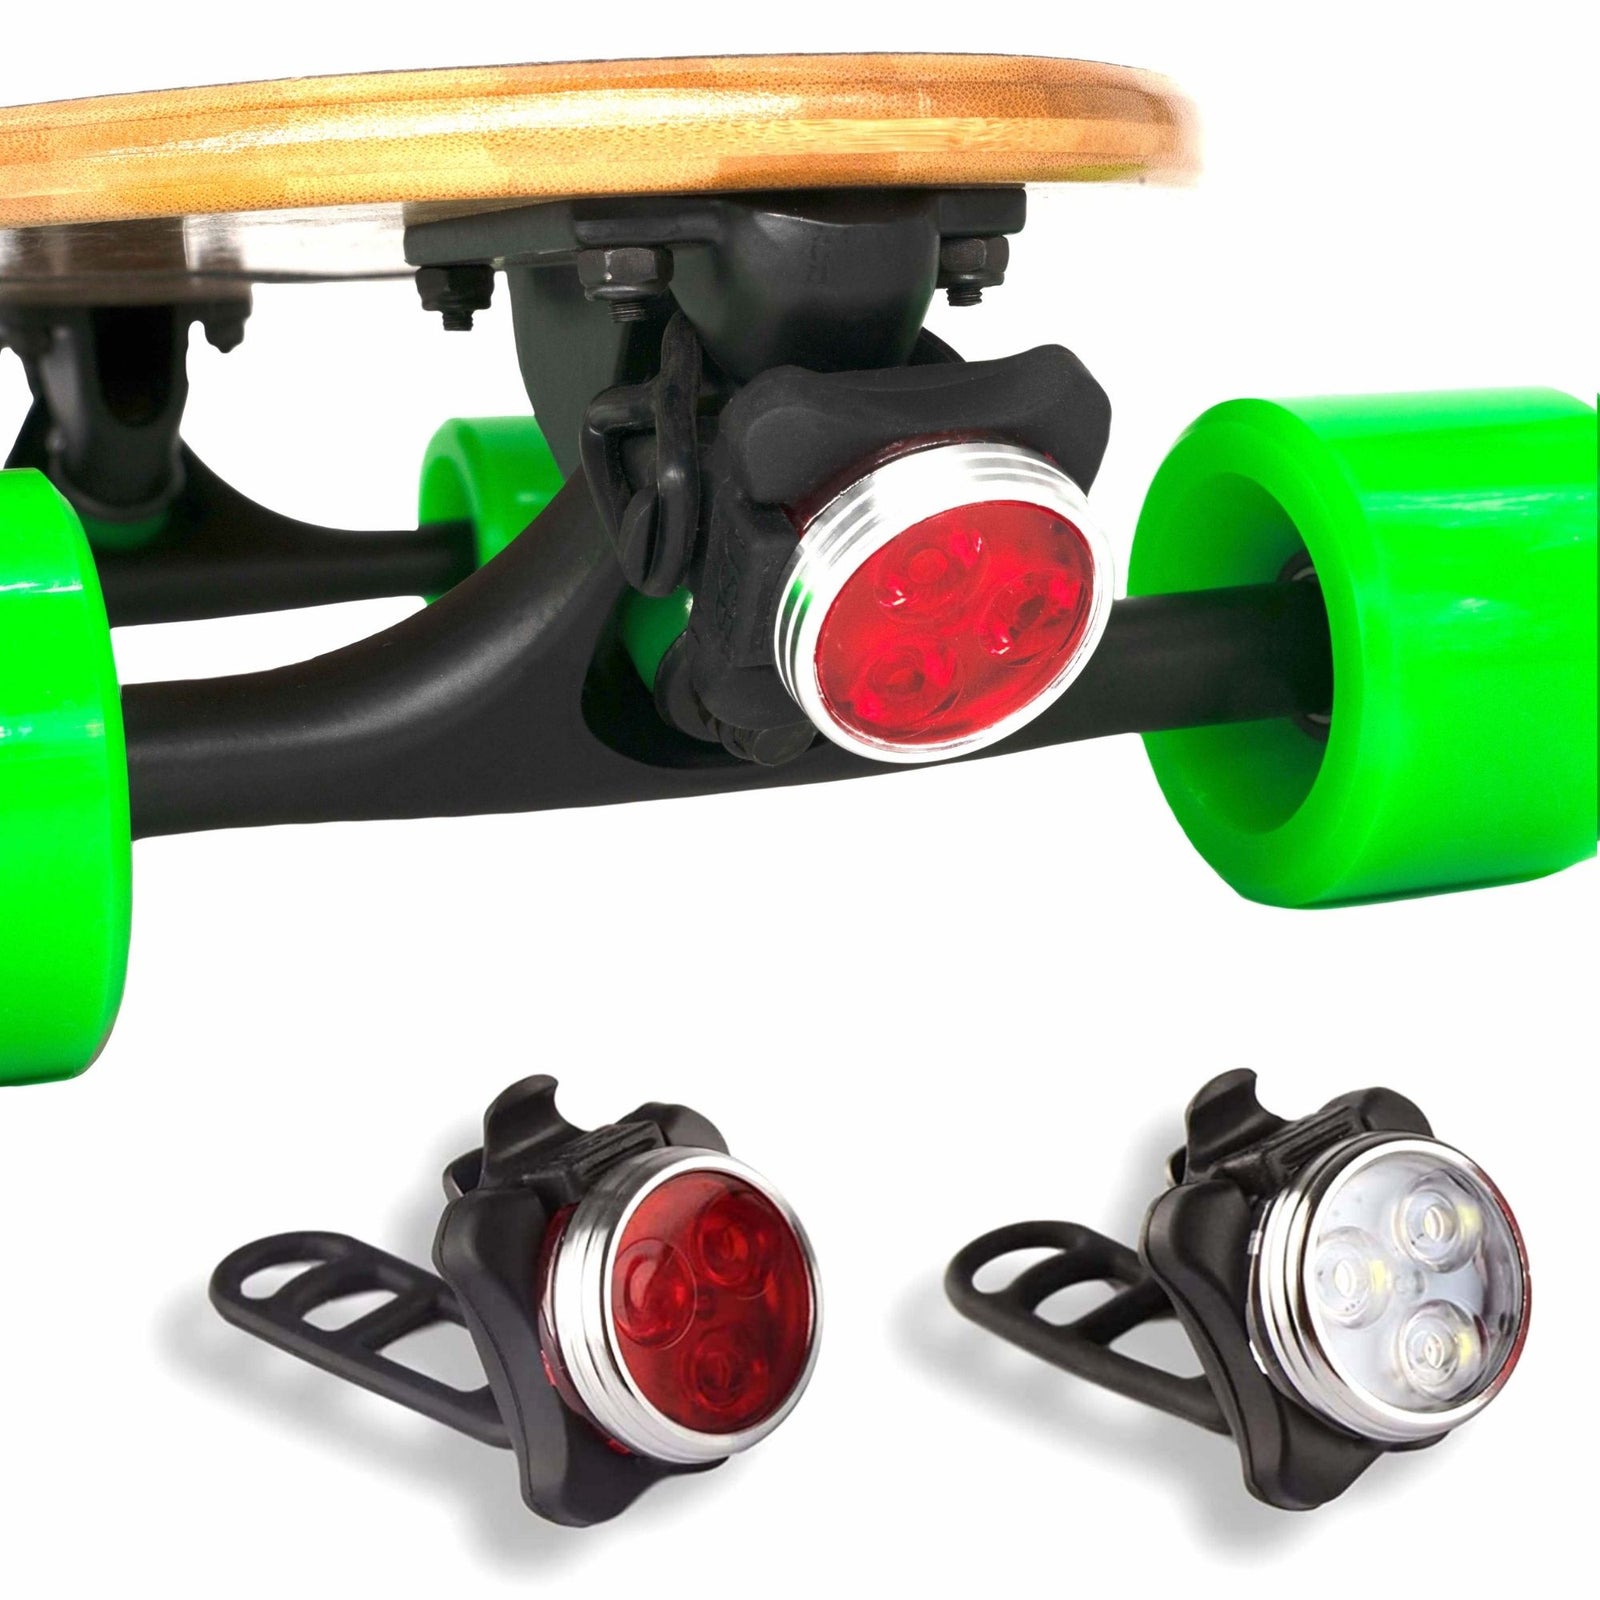 Led Skateboard Lights - Eggboards Led Lights USB Rechargeable